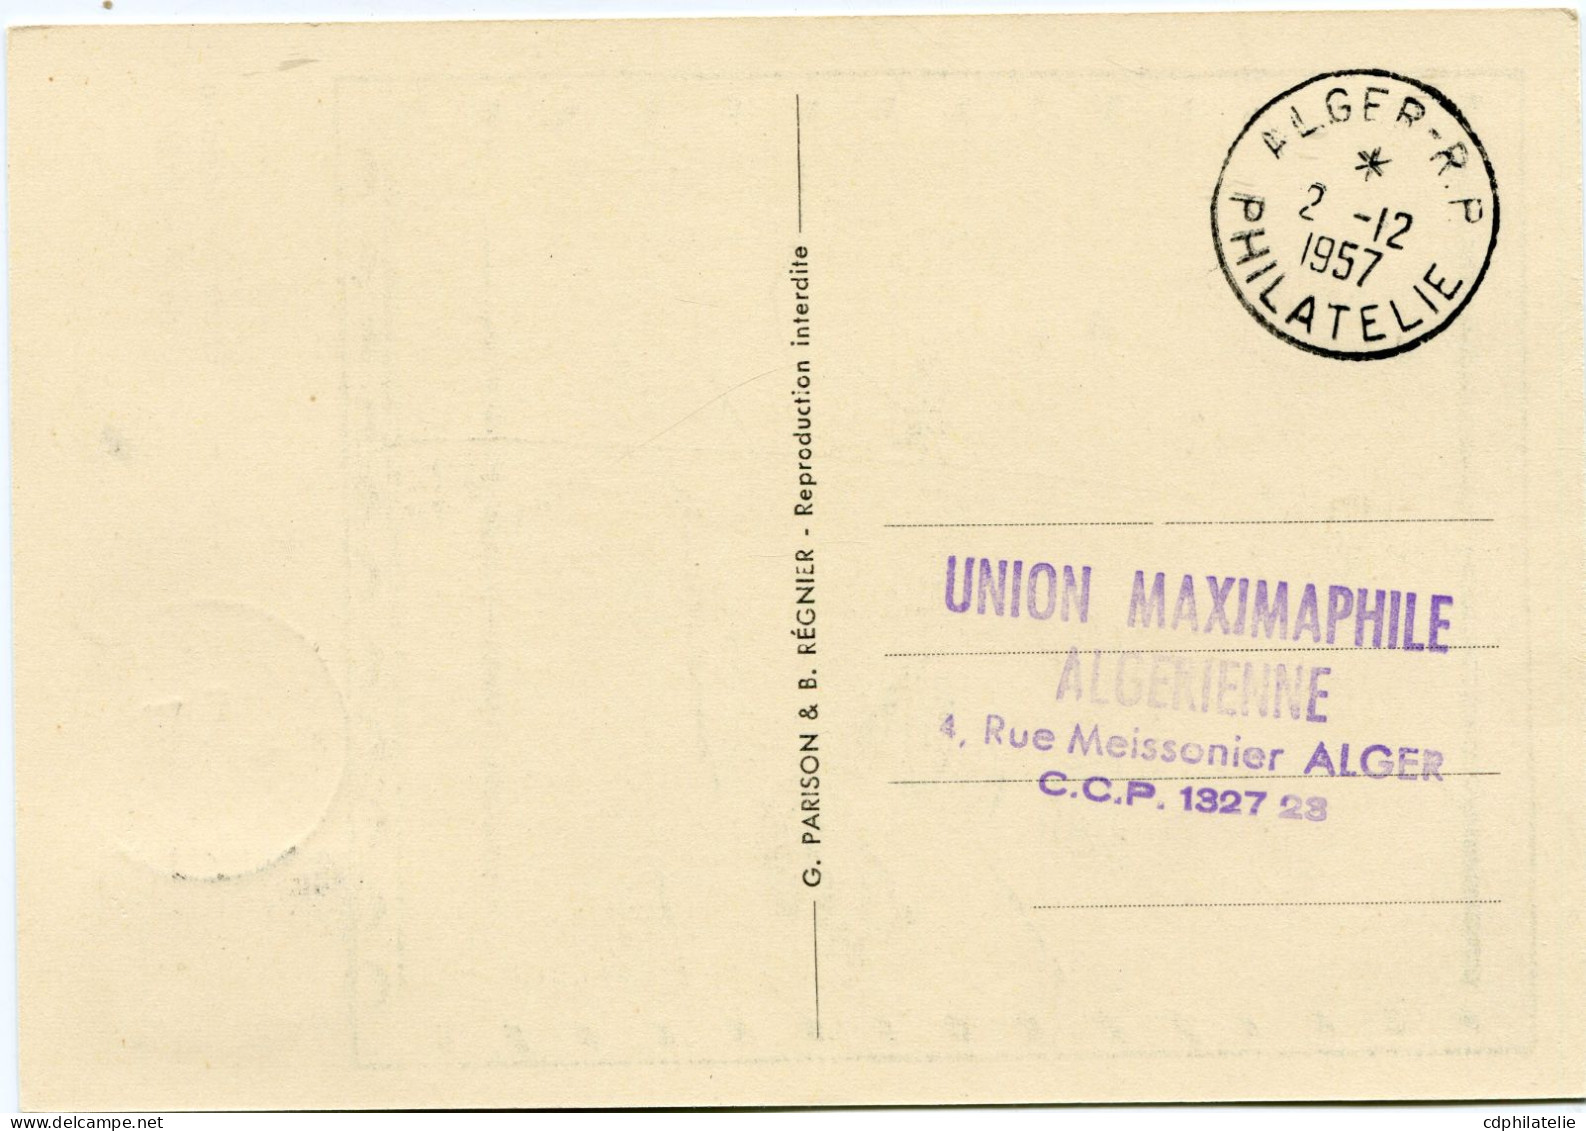 ALGERIE CARTE MAXIMUM DU N°349 MARIANNE DE MULLER AVEC OBLITERATION ALGER 2-12-1957 PHILATELIE - Cartes-maximum